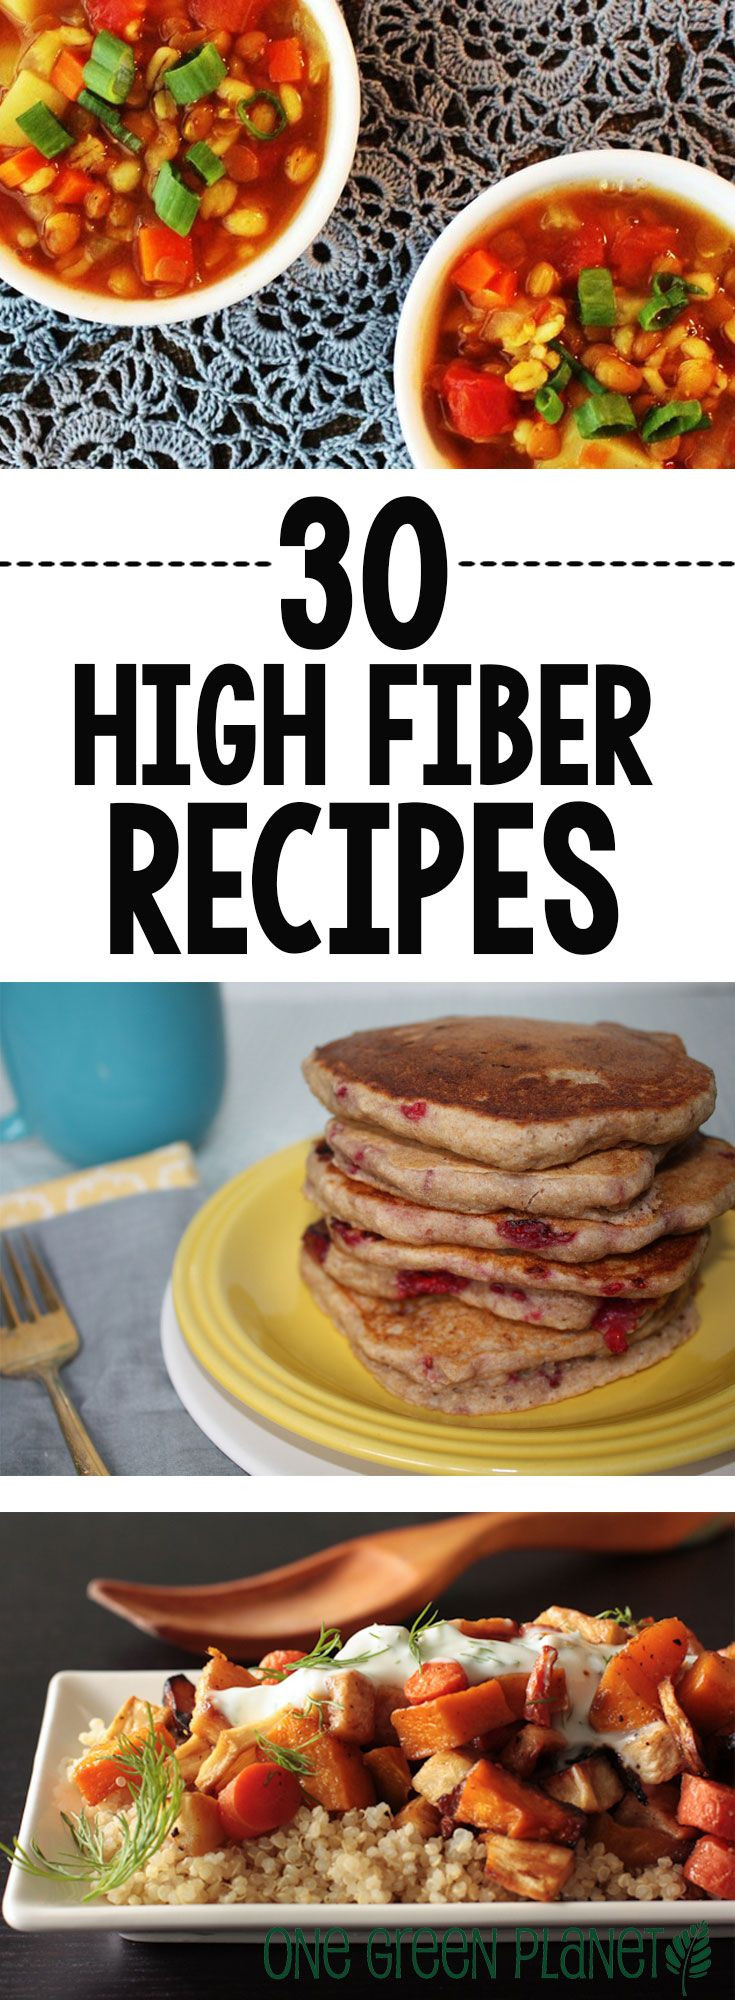 High Fiber Diet Recipes
 30 Vegan High Fiber Recipes to Keep Your System Moving